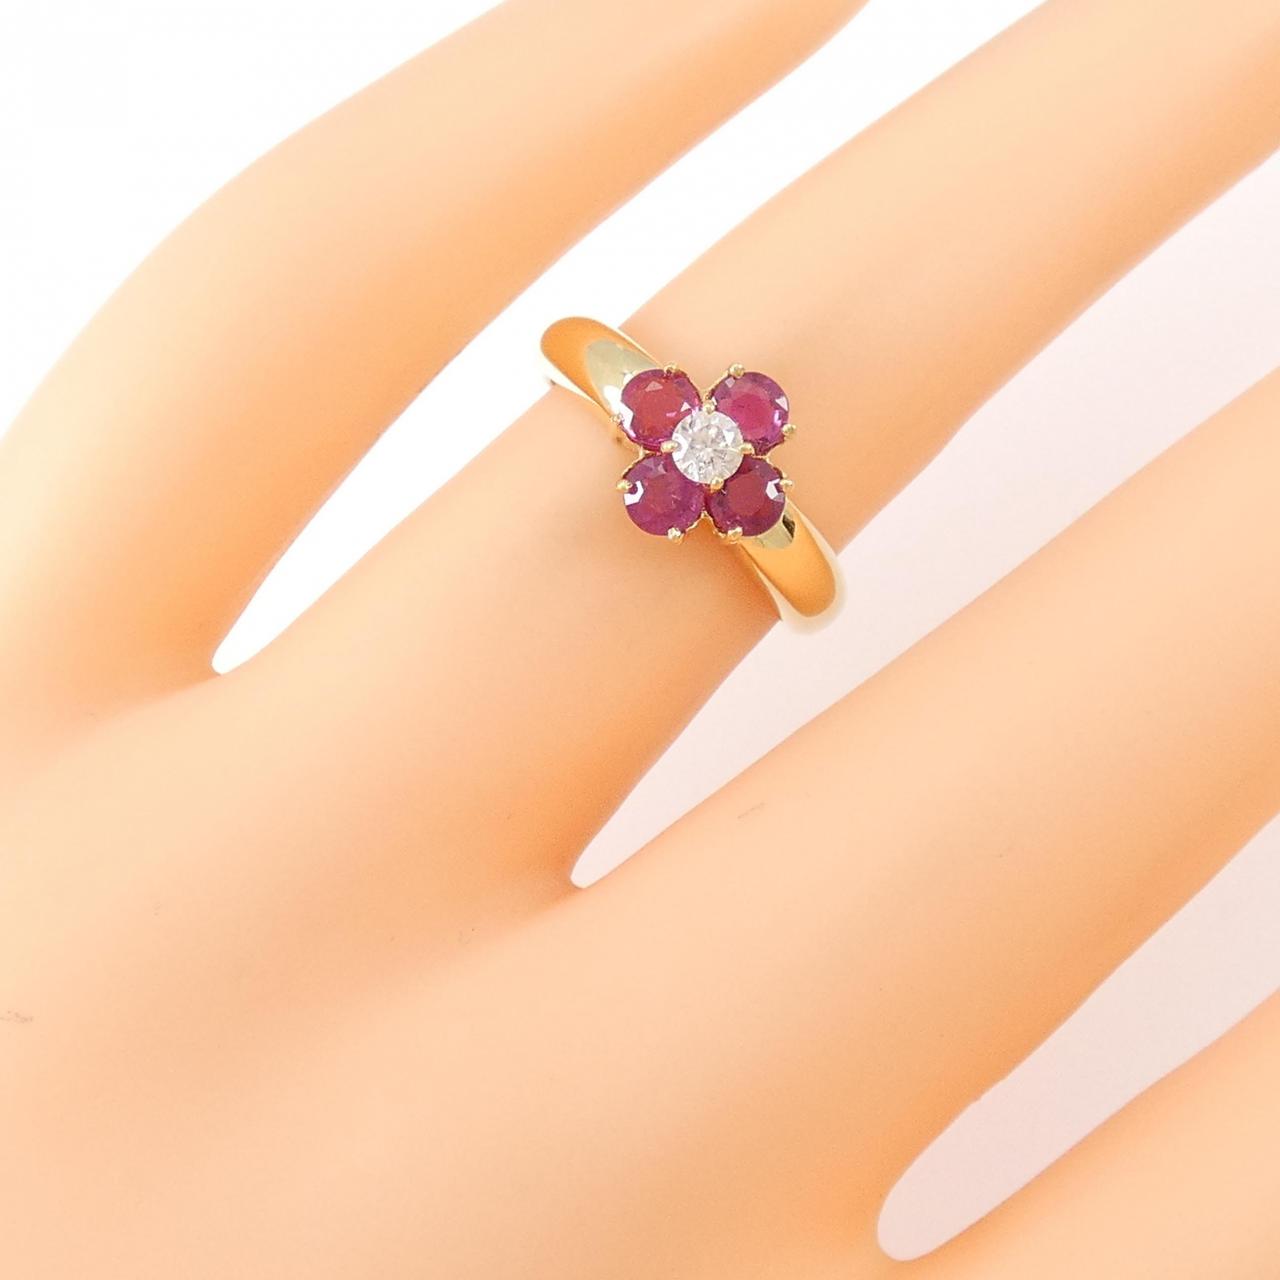 K18YG flower ruby ring